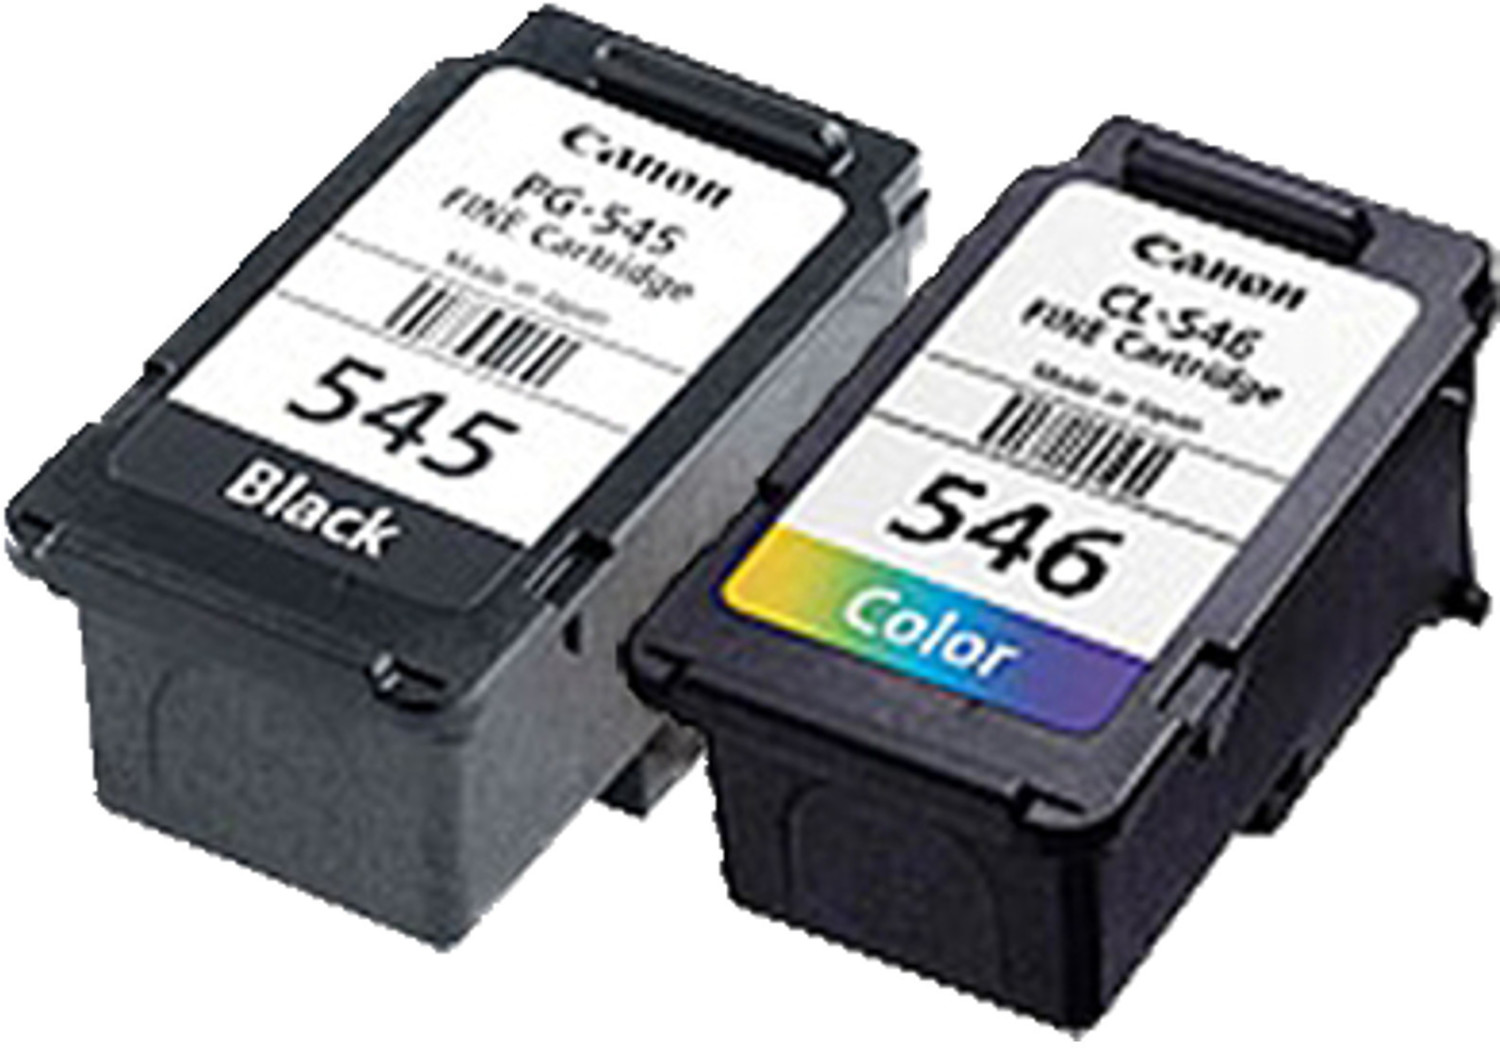 2 Cartouches d'imprimante Canon PG-545 noir CL-546 couleur